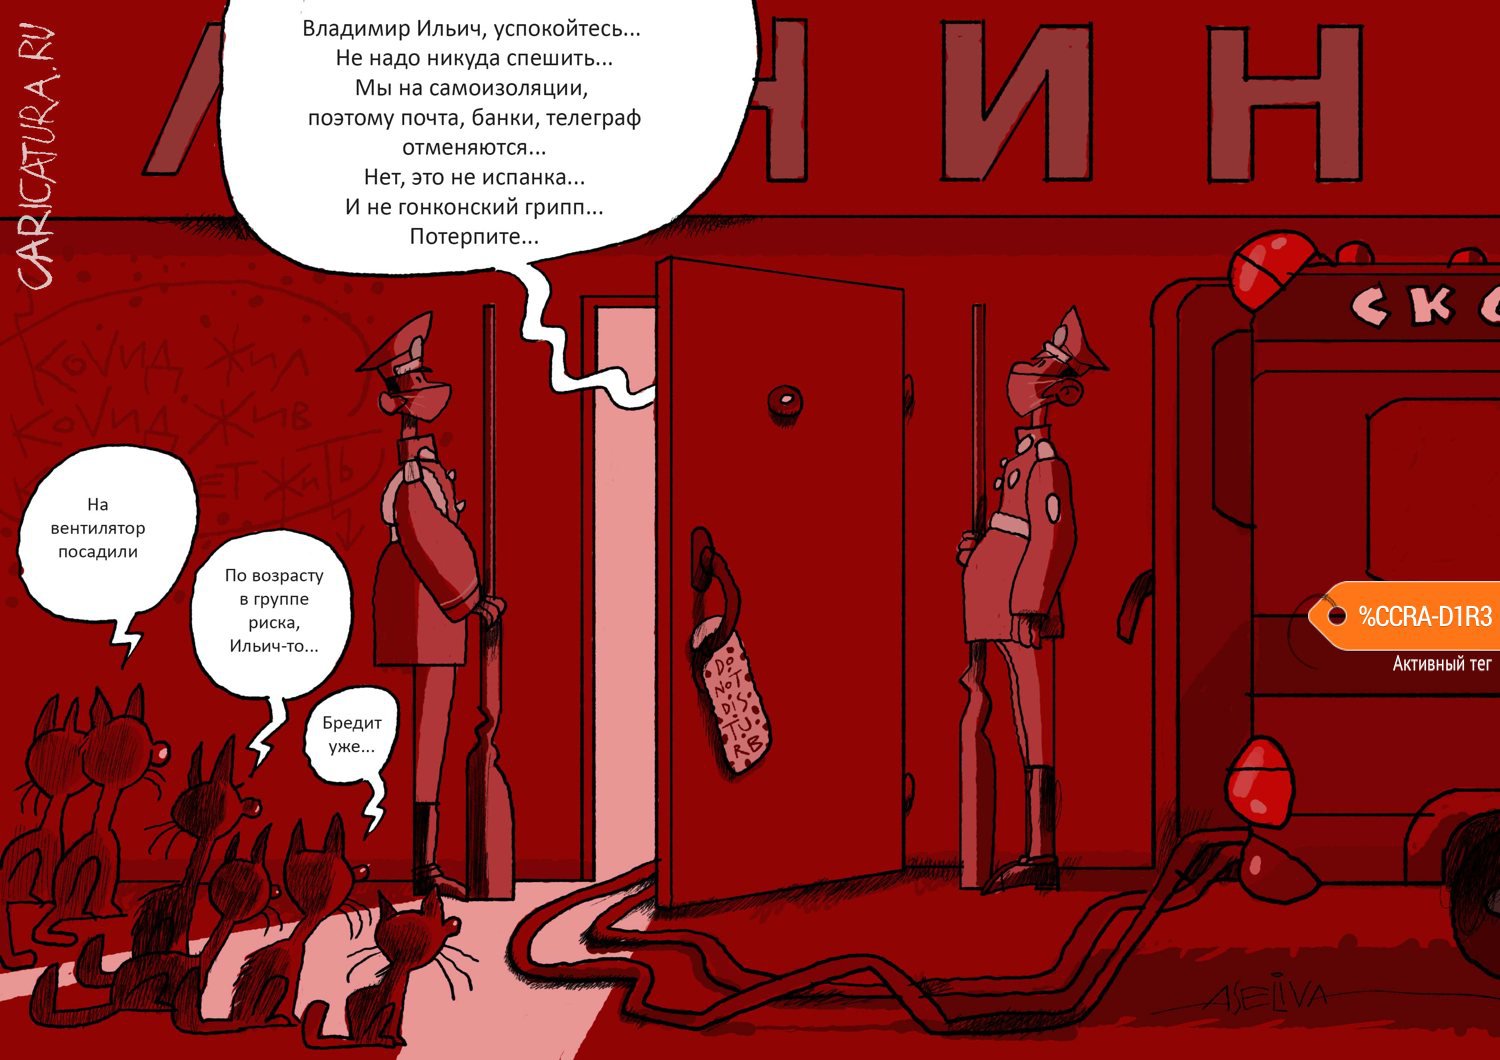 Карикатура "Революционное обострение во время пандемии", Андрей Селиванов